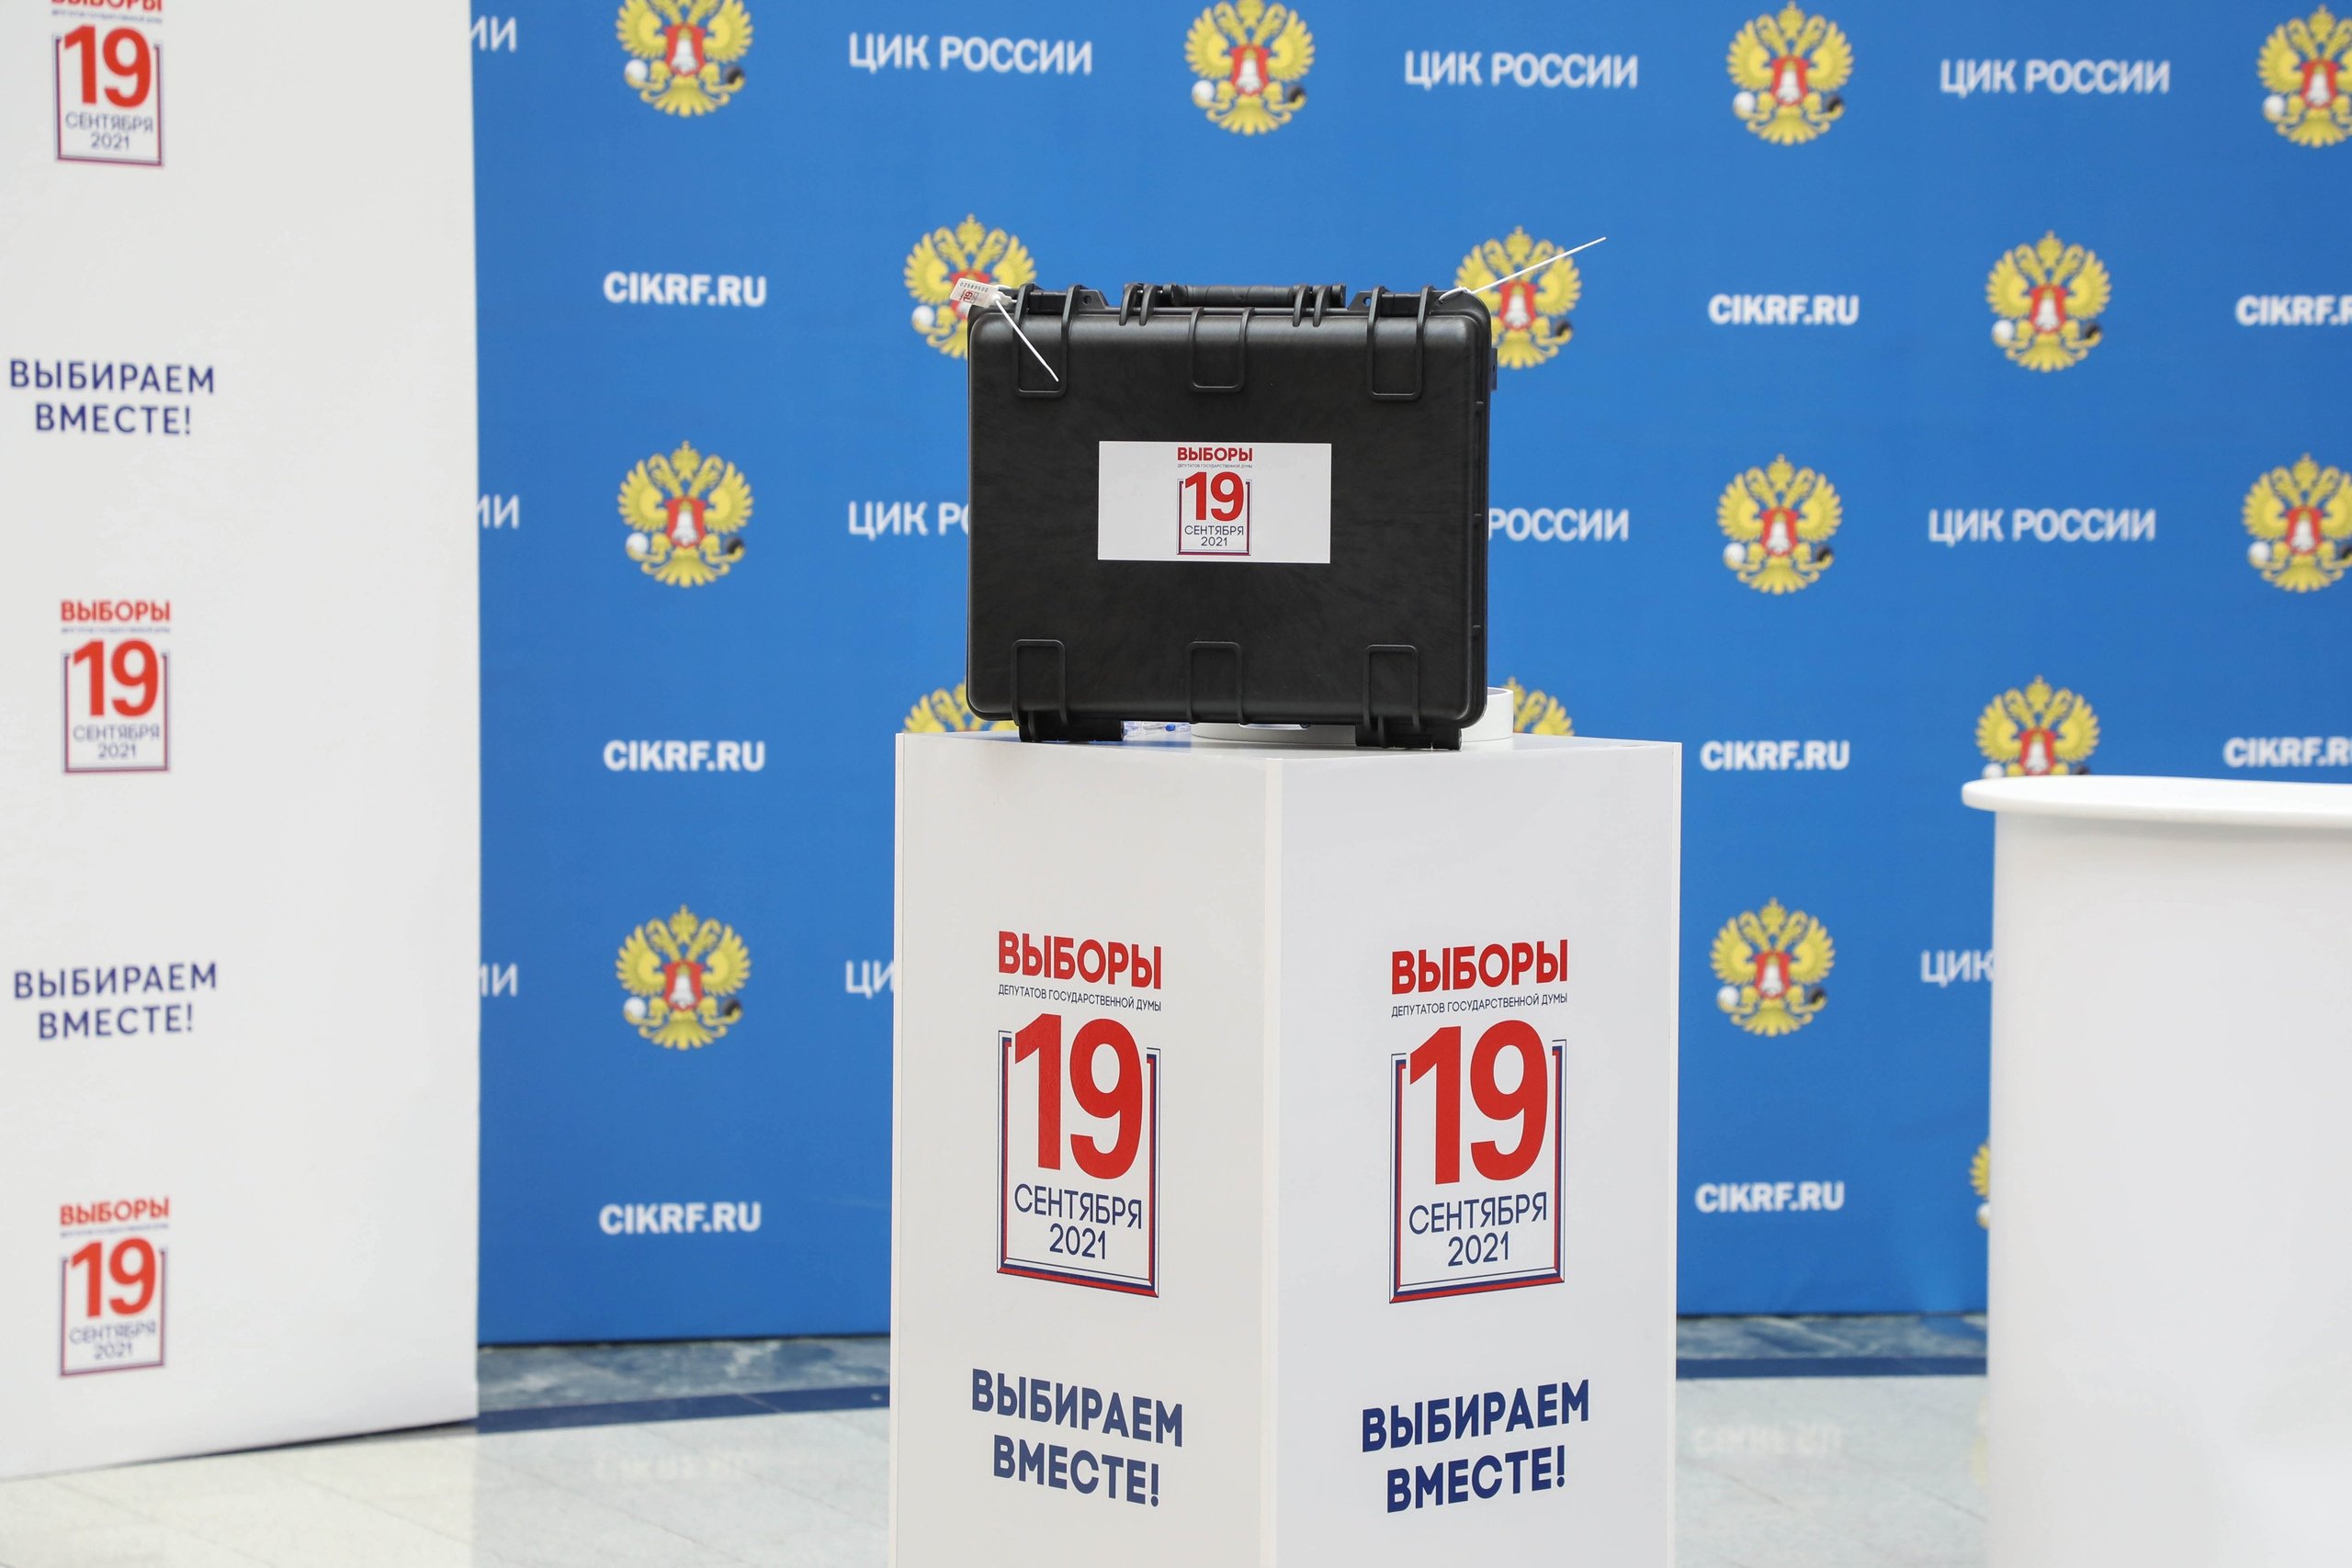 

В Сюмсинском районе Удмуртии неизвестные потребовали от избиркома списки проголосовавших

